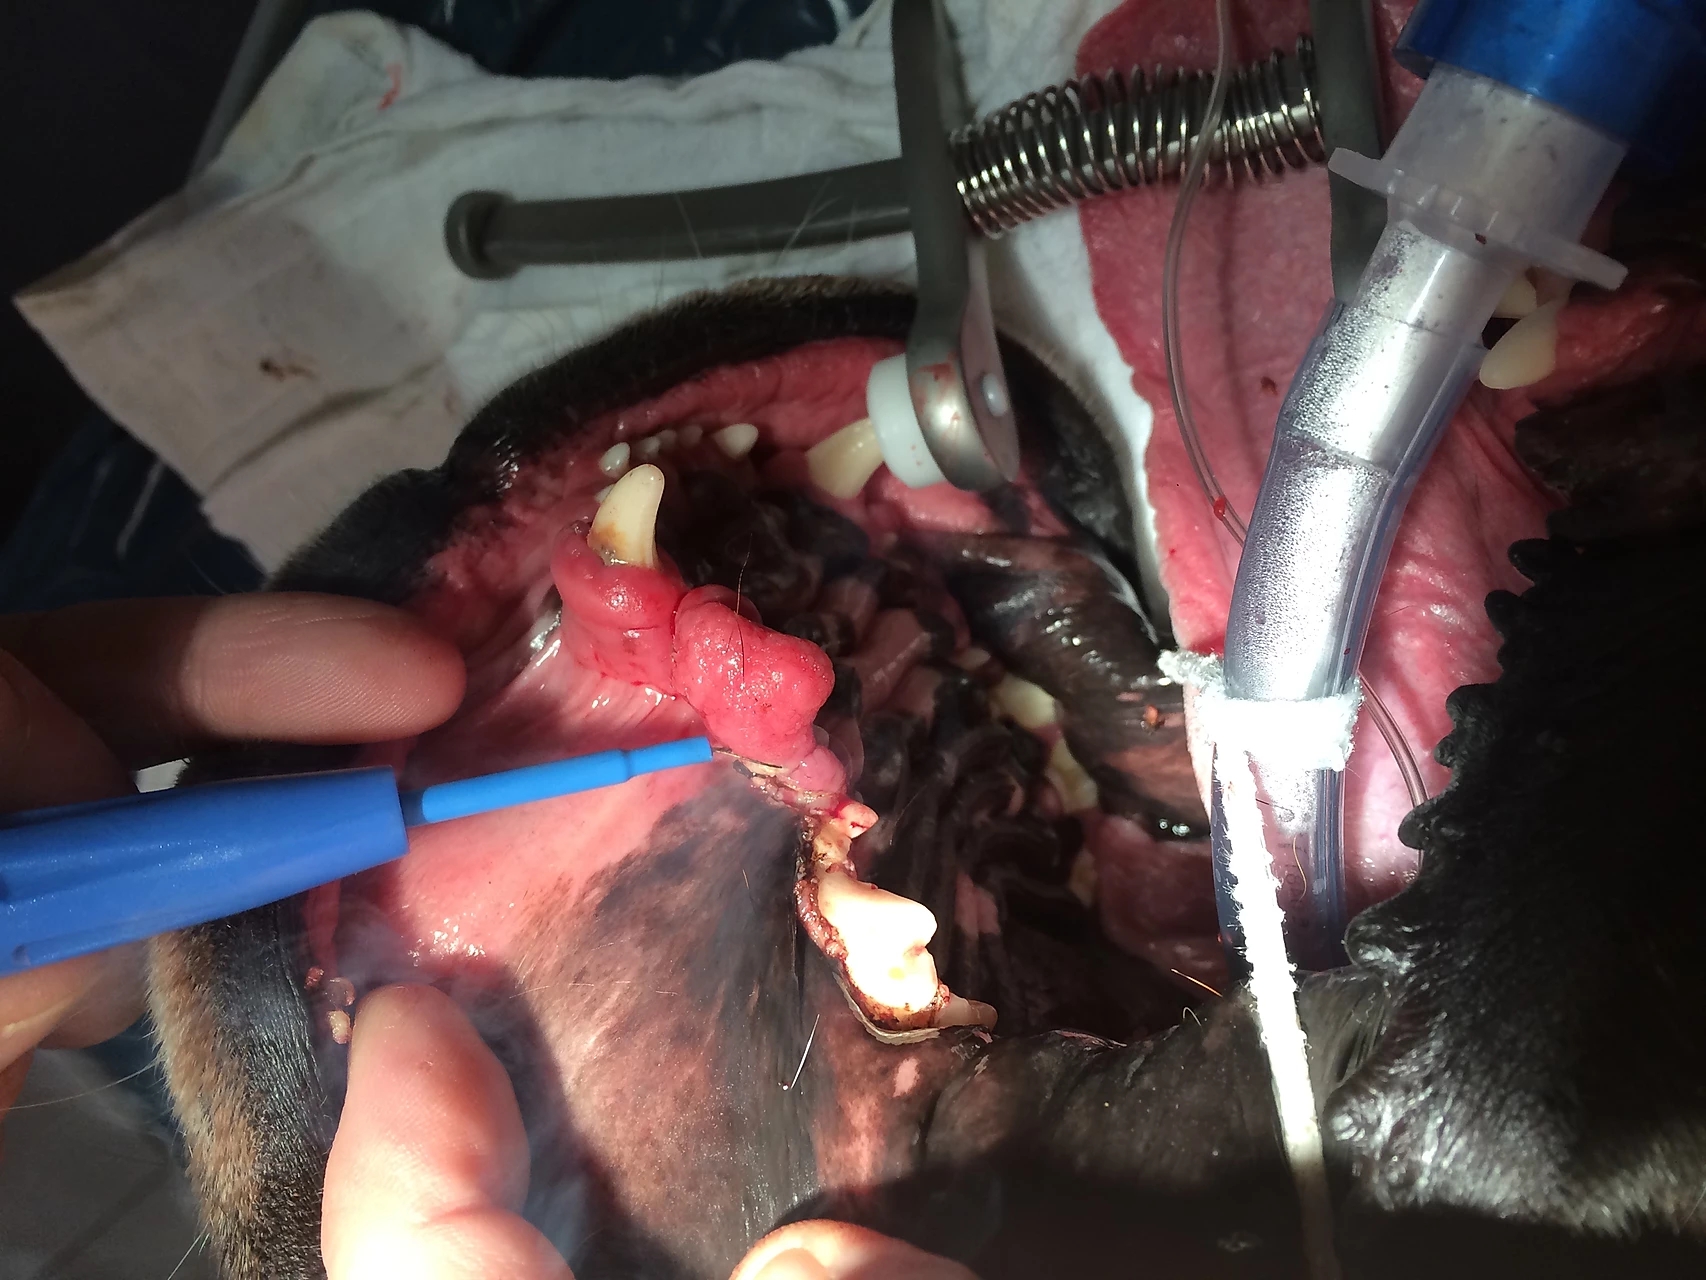 Maulhöhlensanierung
bei Zahnfleischhyperplasie